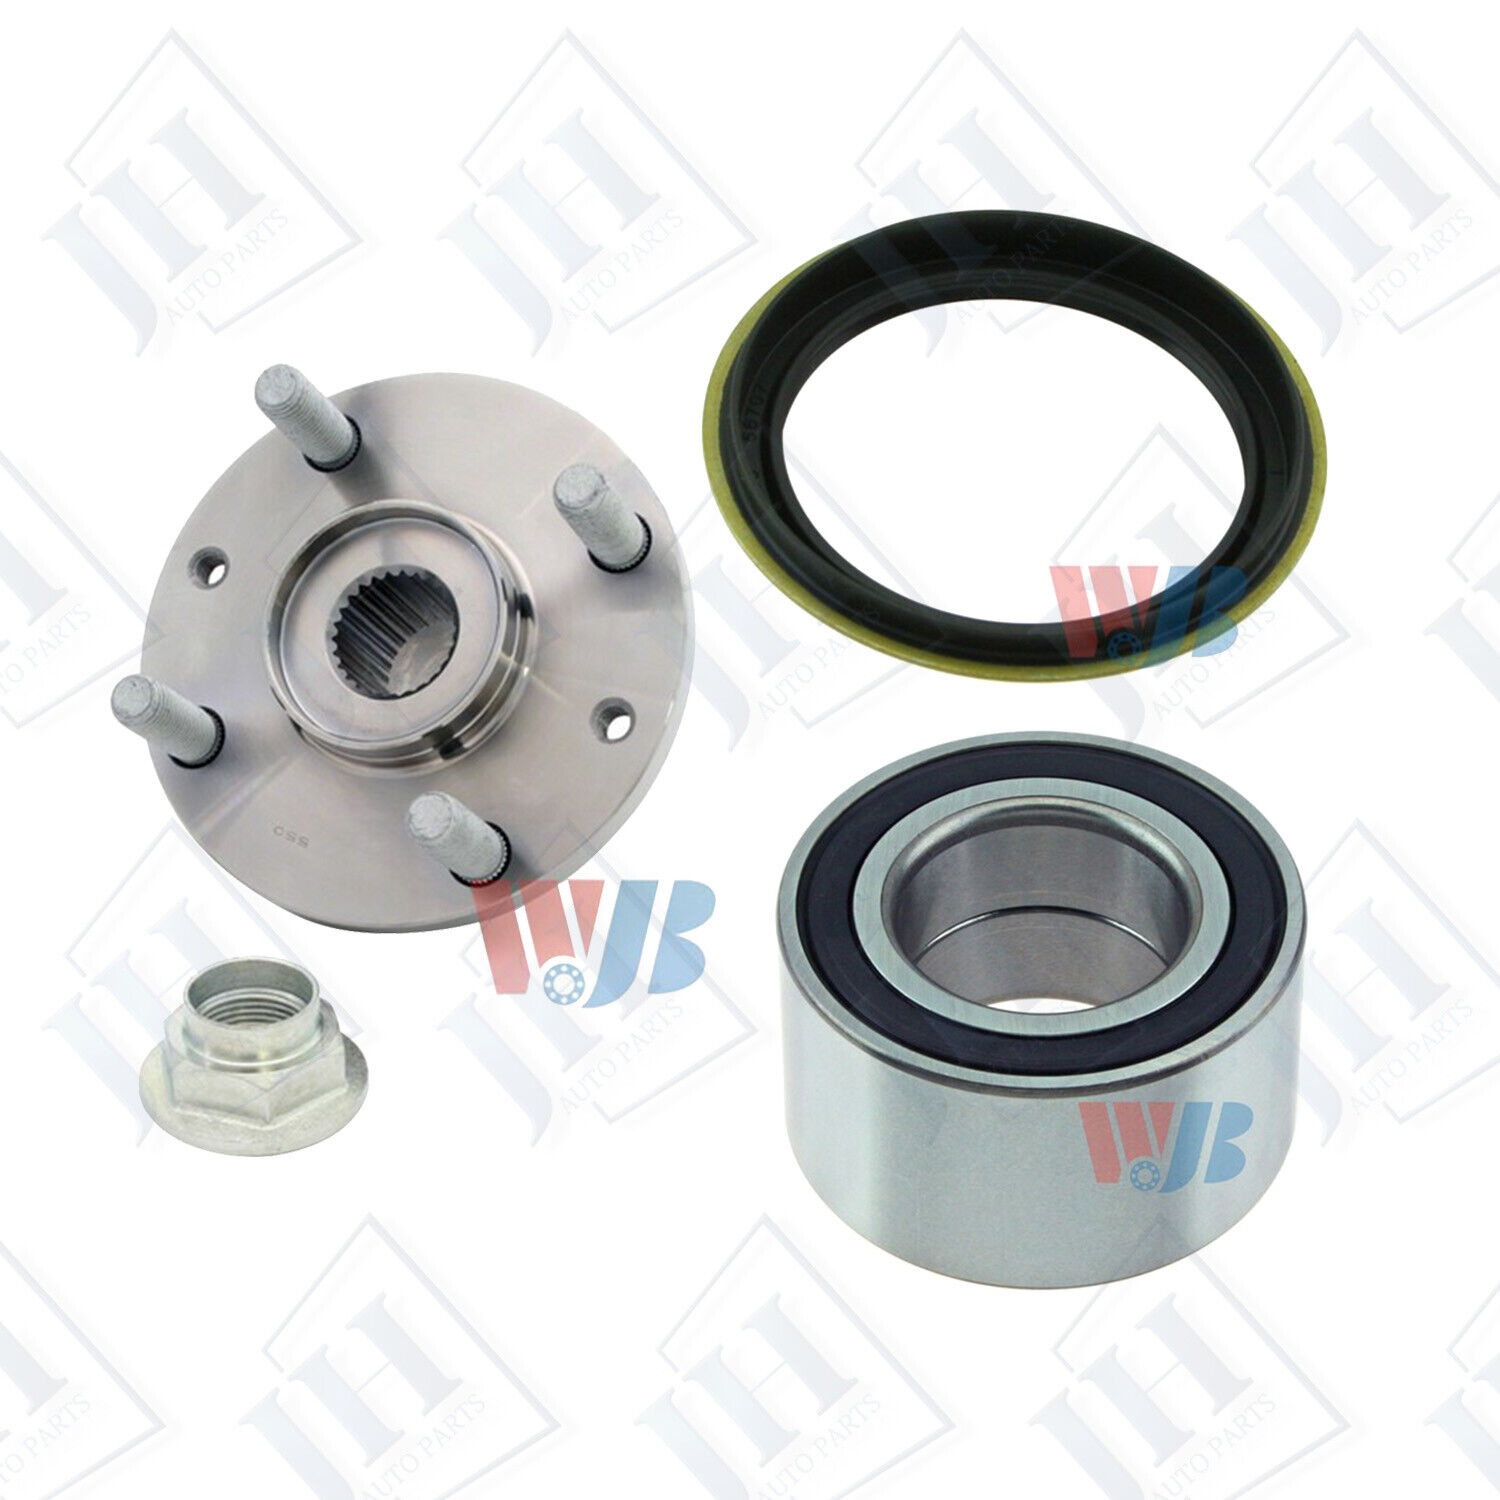 3Pcs/Set Wheel Hub Bearing & Seal Kit Assembly For Mazda 323 Miata MX-3 Protege